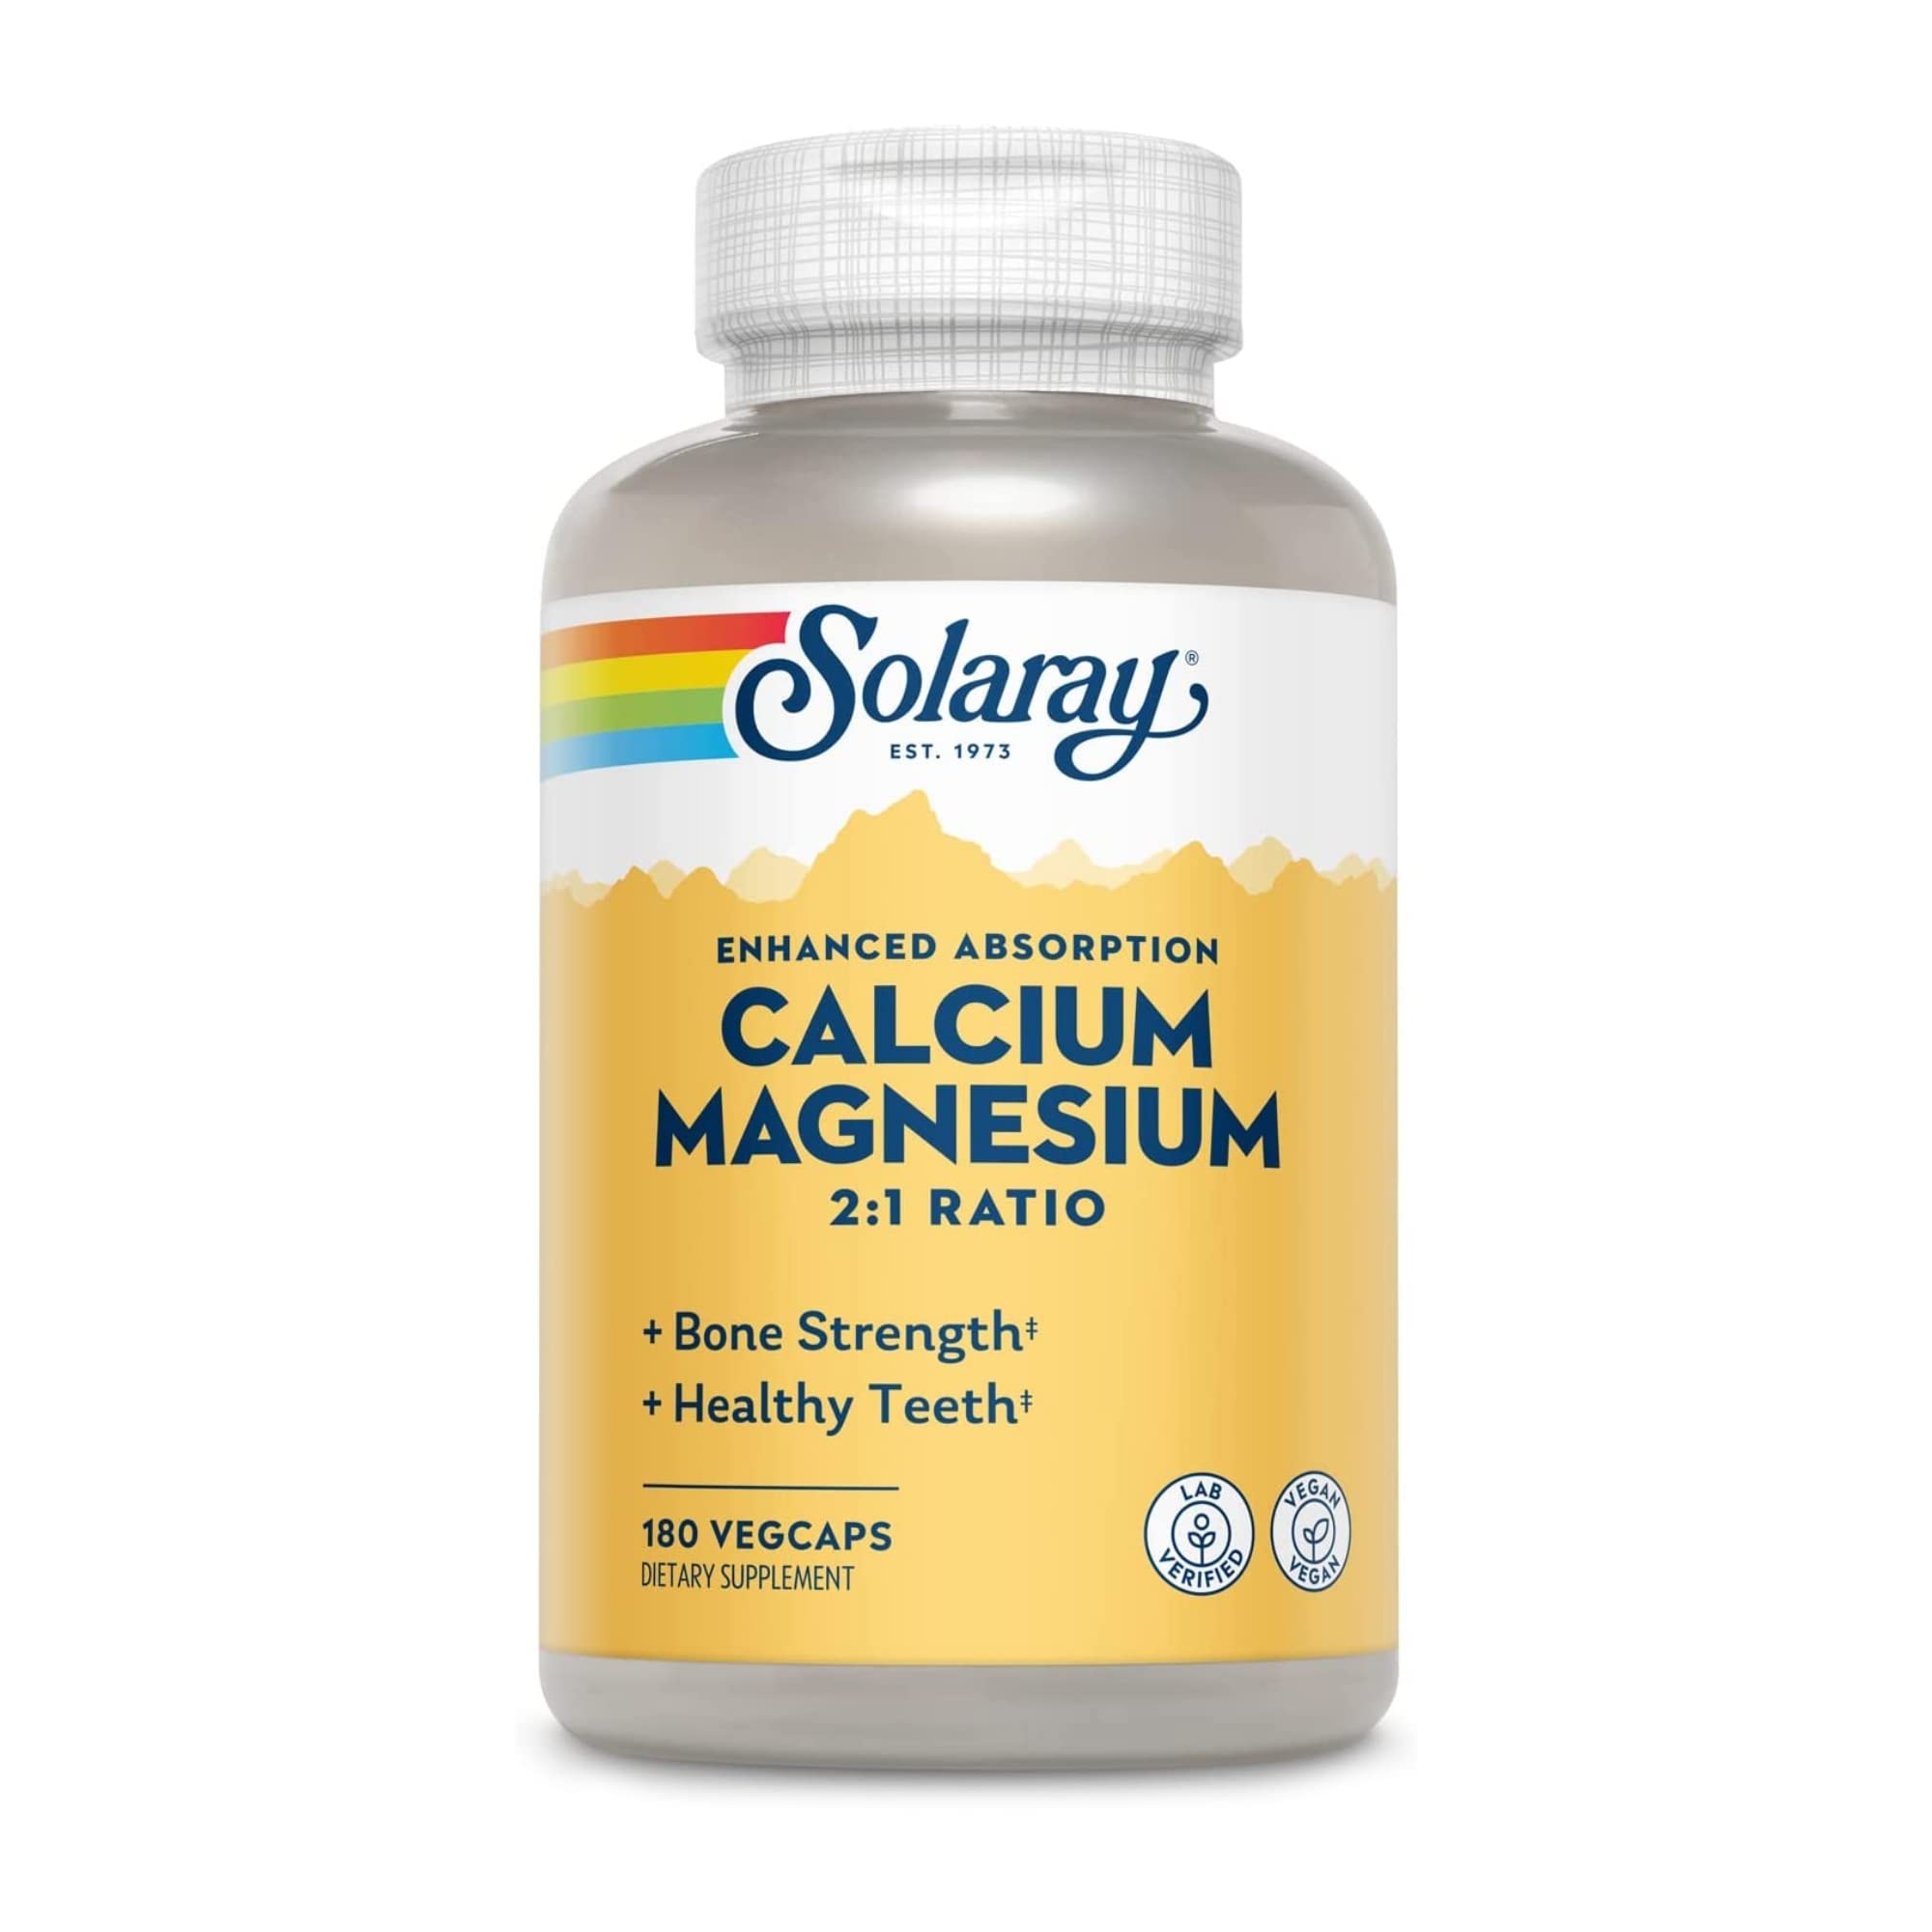 Solaray Calcium & Magnesium Supplement 2:1 Ratio - 180ct VegCap